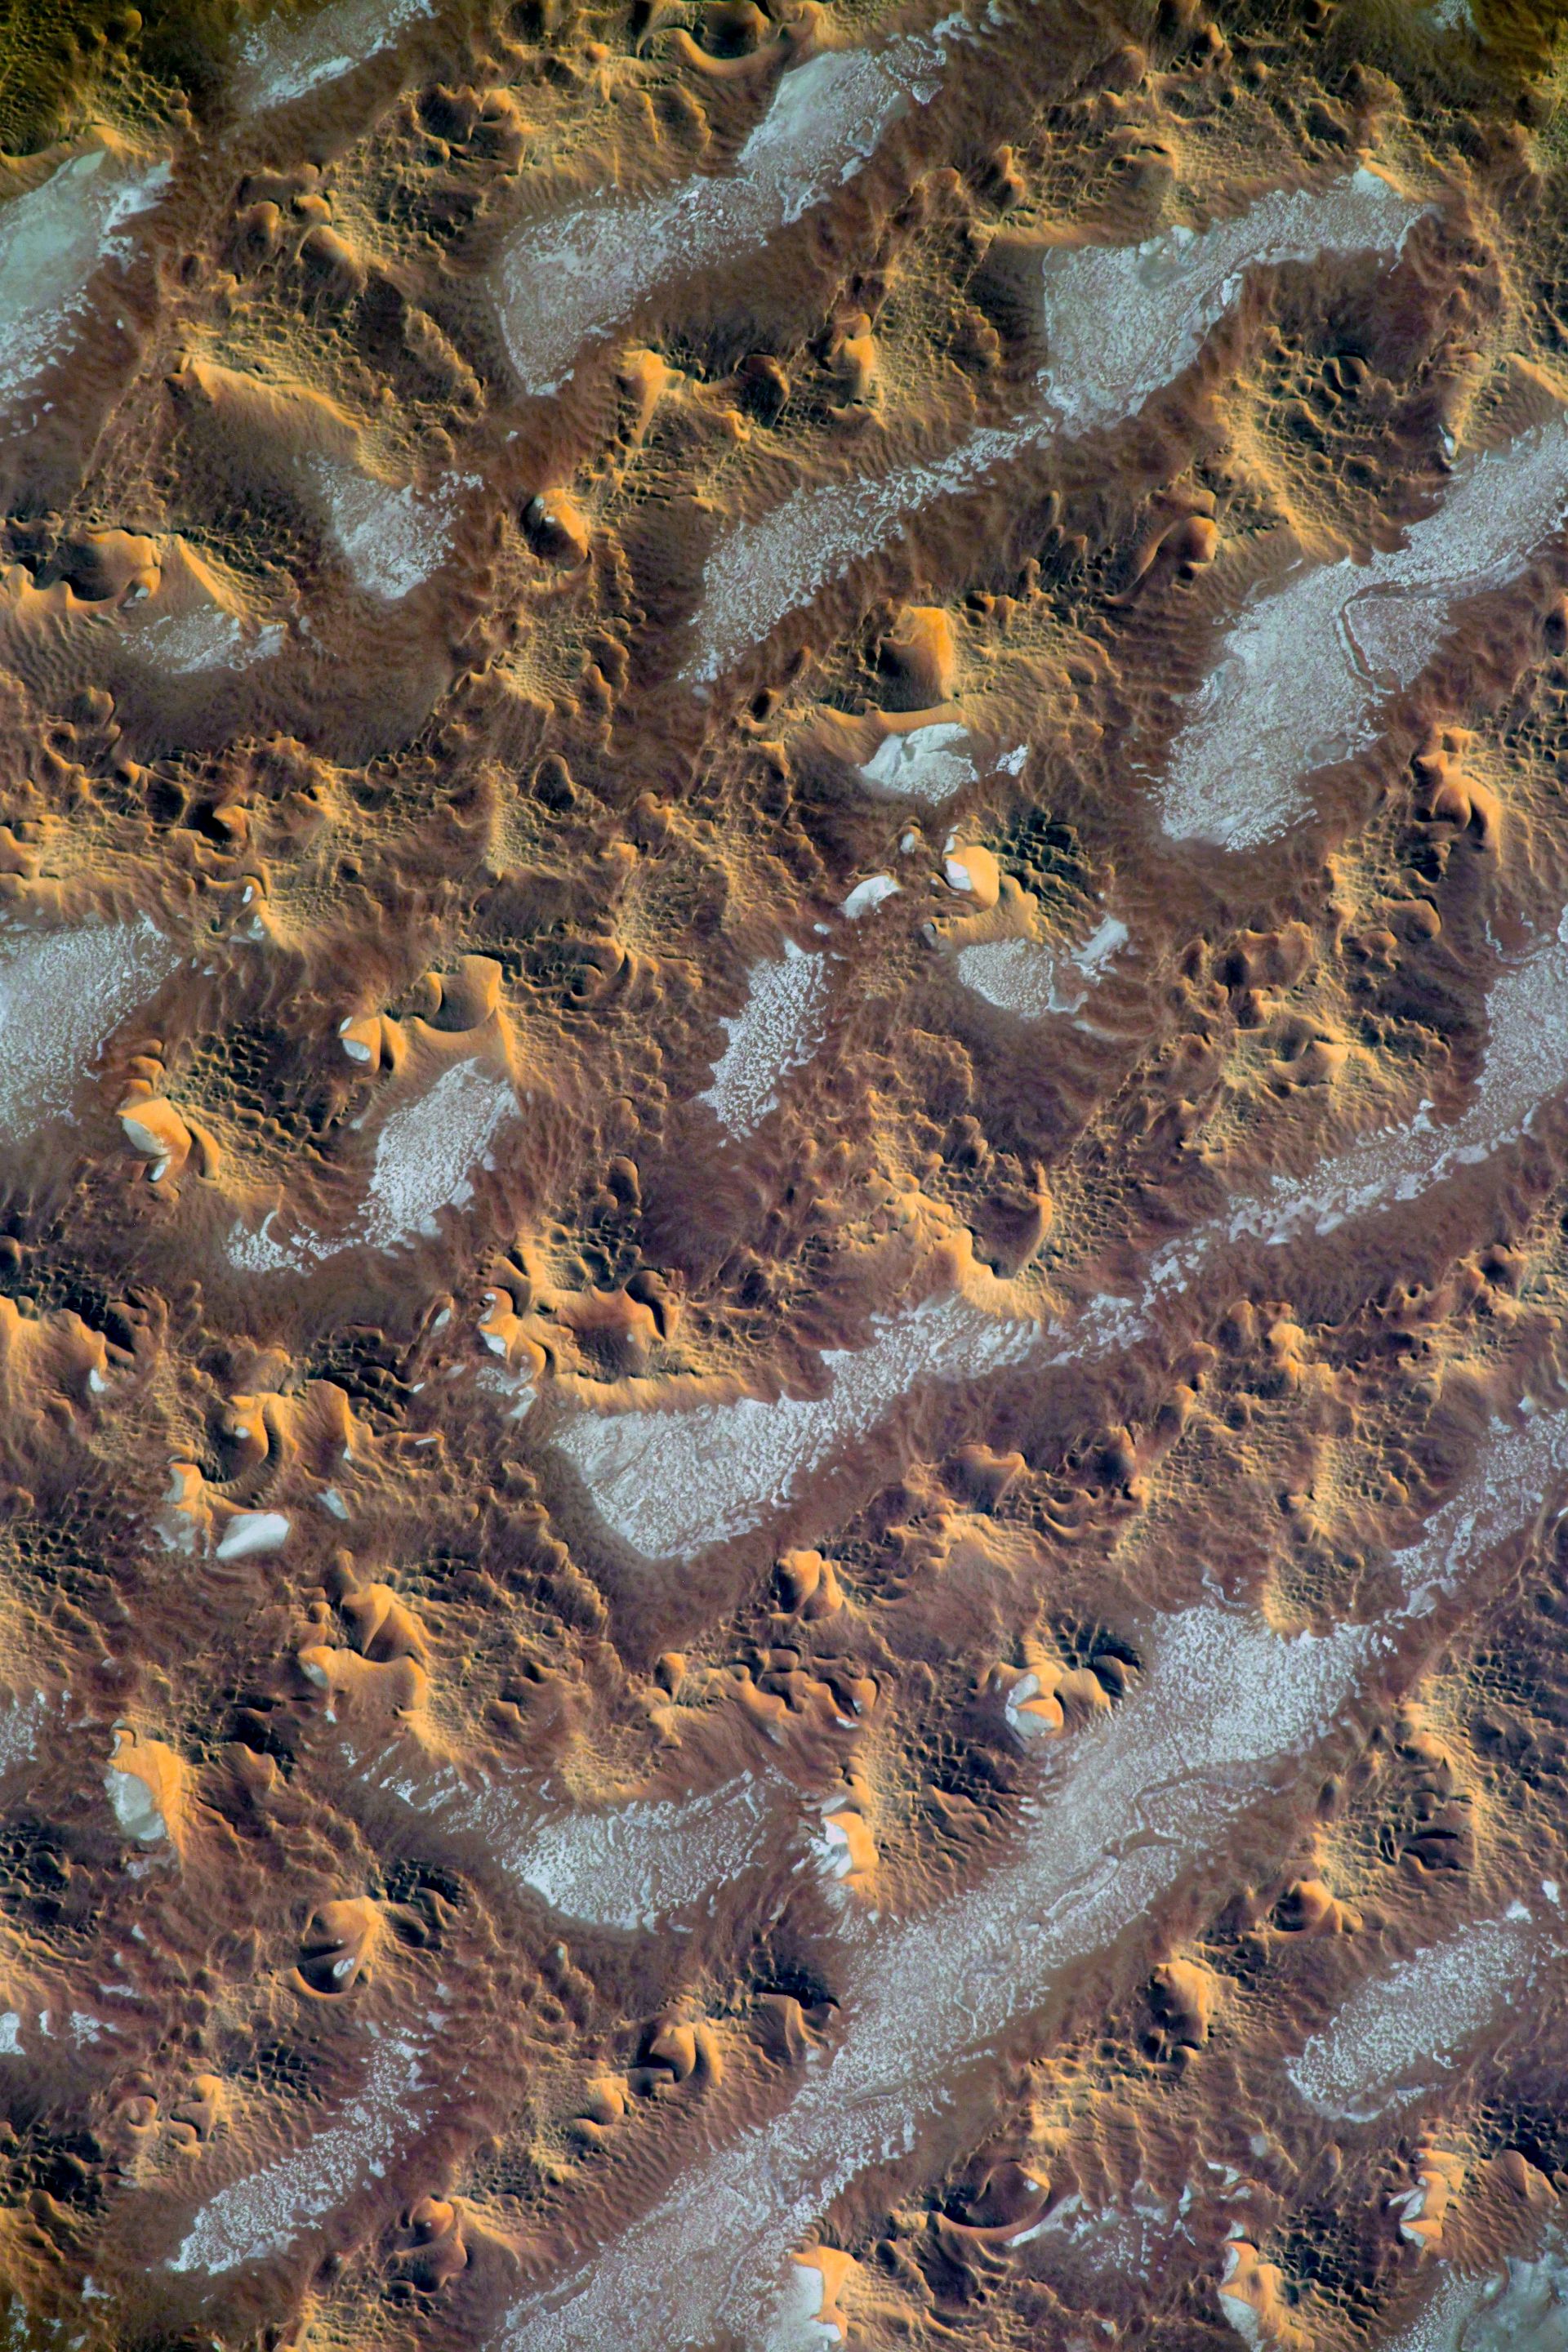 От коя планета е тази снимка - Марс или Земята?